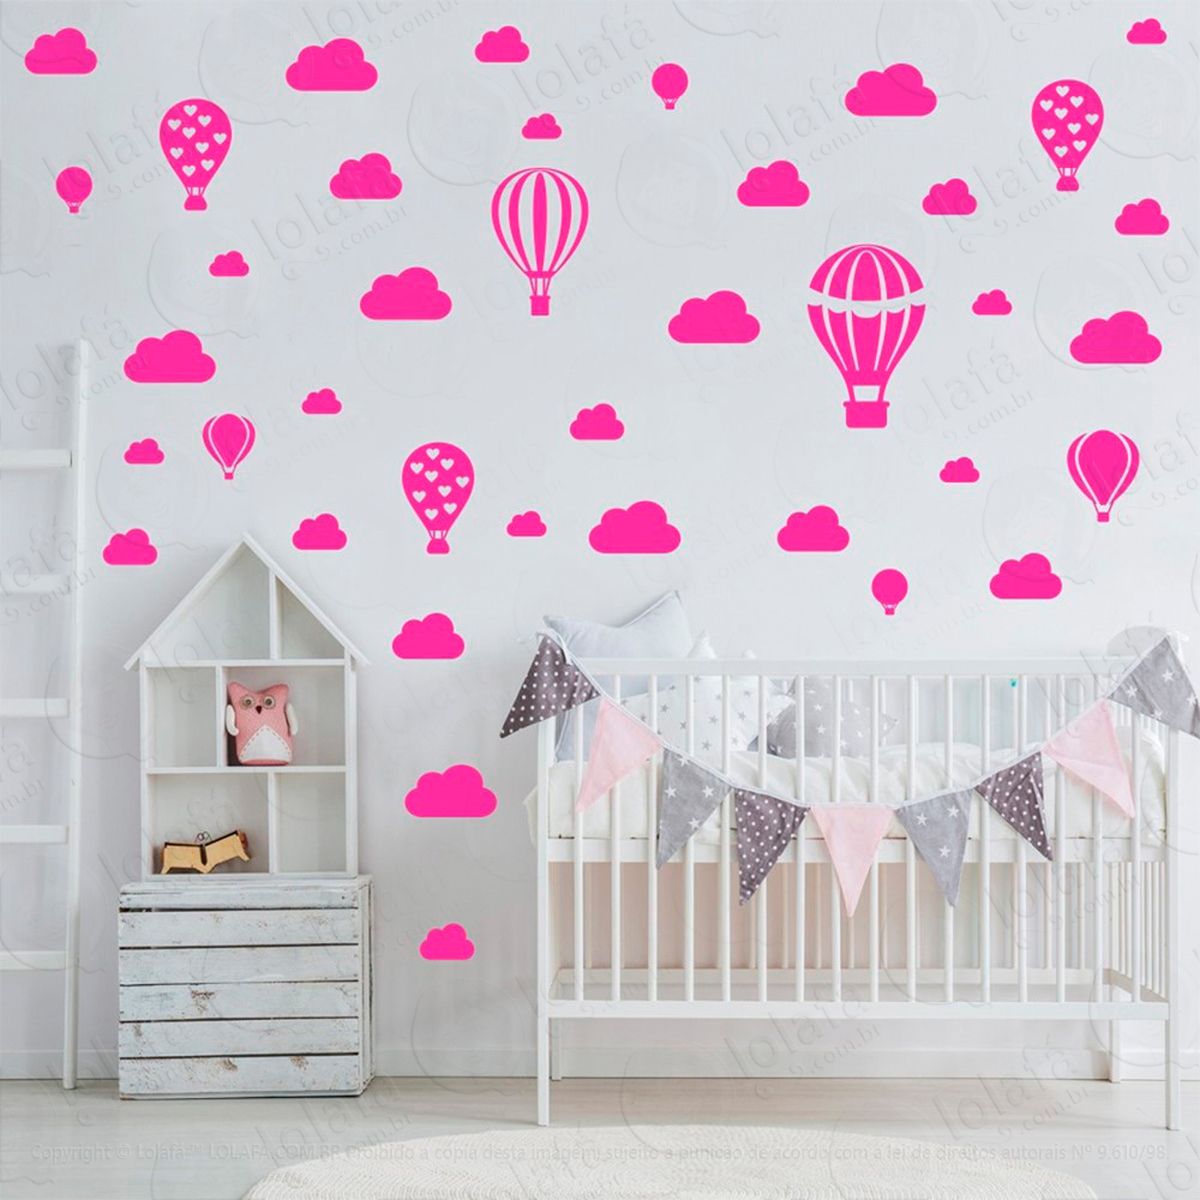 adesivos balões e nuvens 42 peças adesivos para quarto de bebê infantil - mod:805